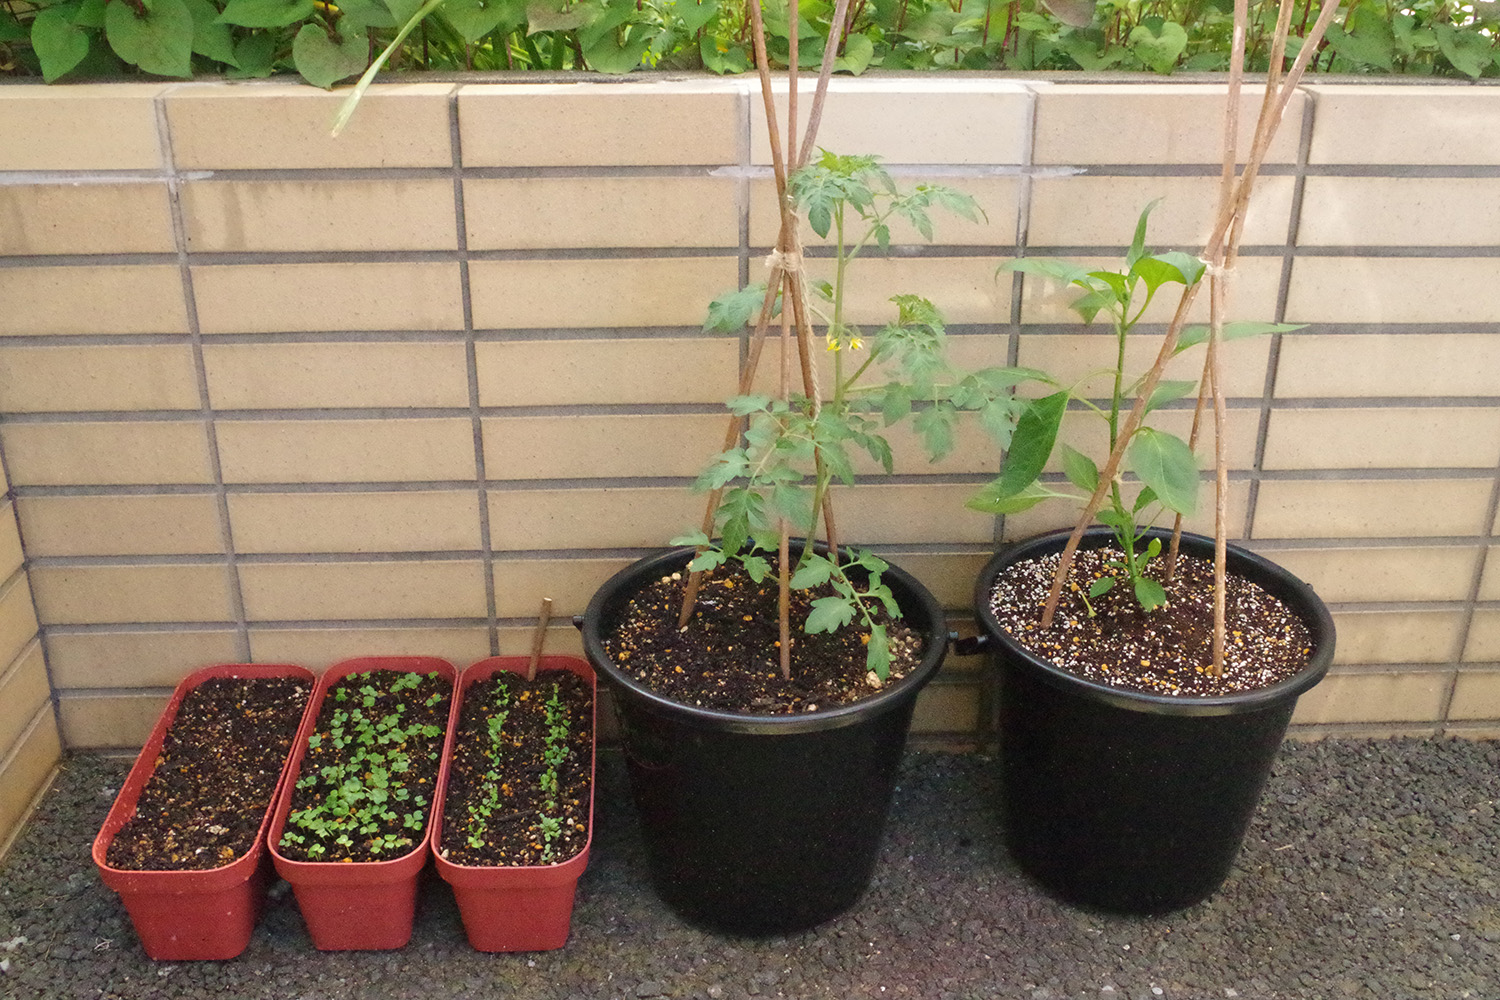 トマトや葉野菜 ベランダ菜園を 害虫から守る方法 と 脇芽かき のやり方 Be Pal